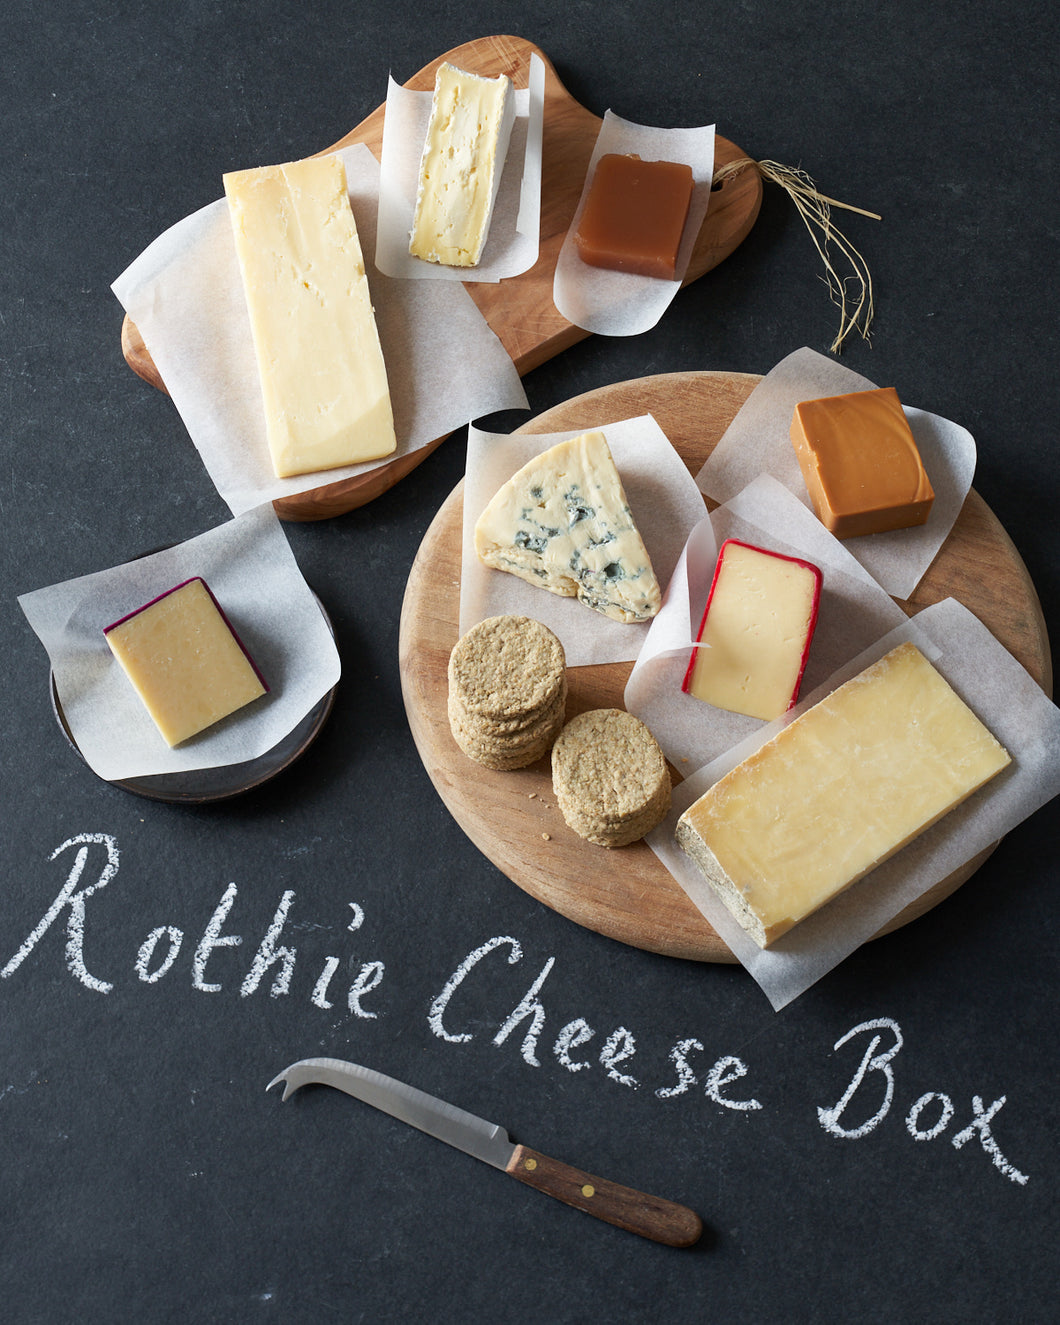 Rothie Cheese Box